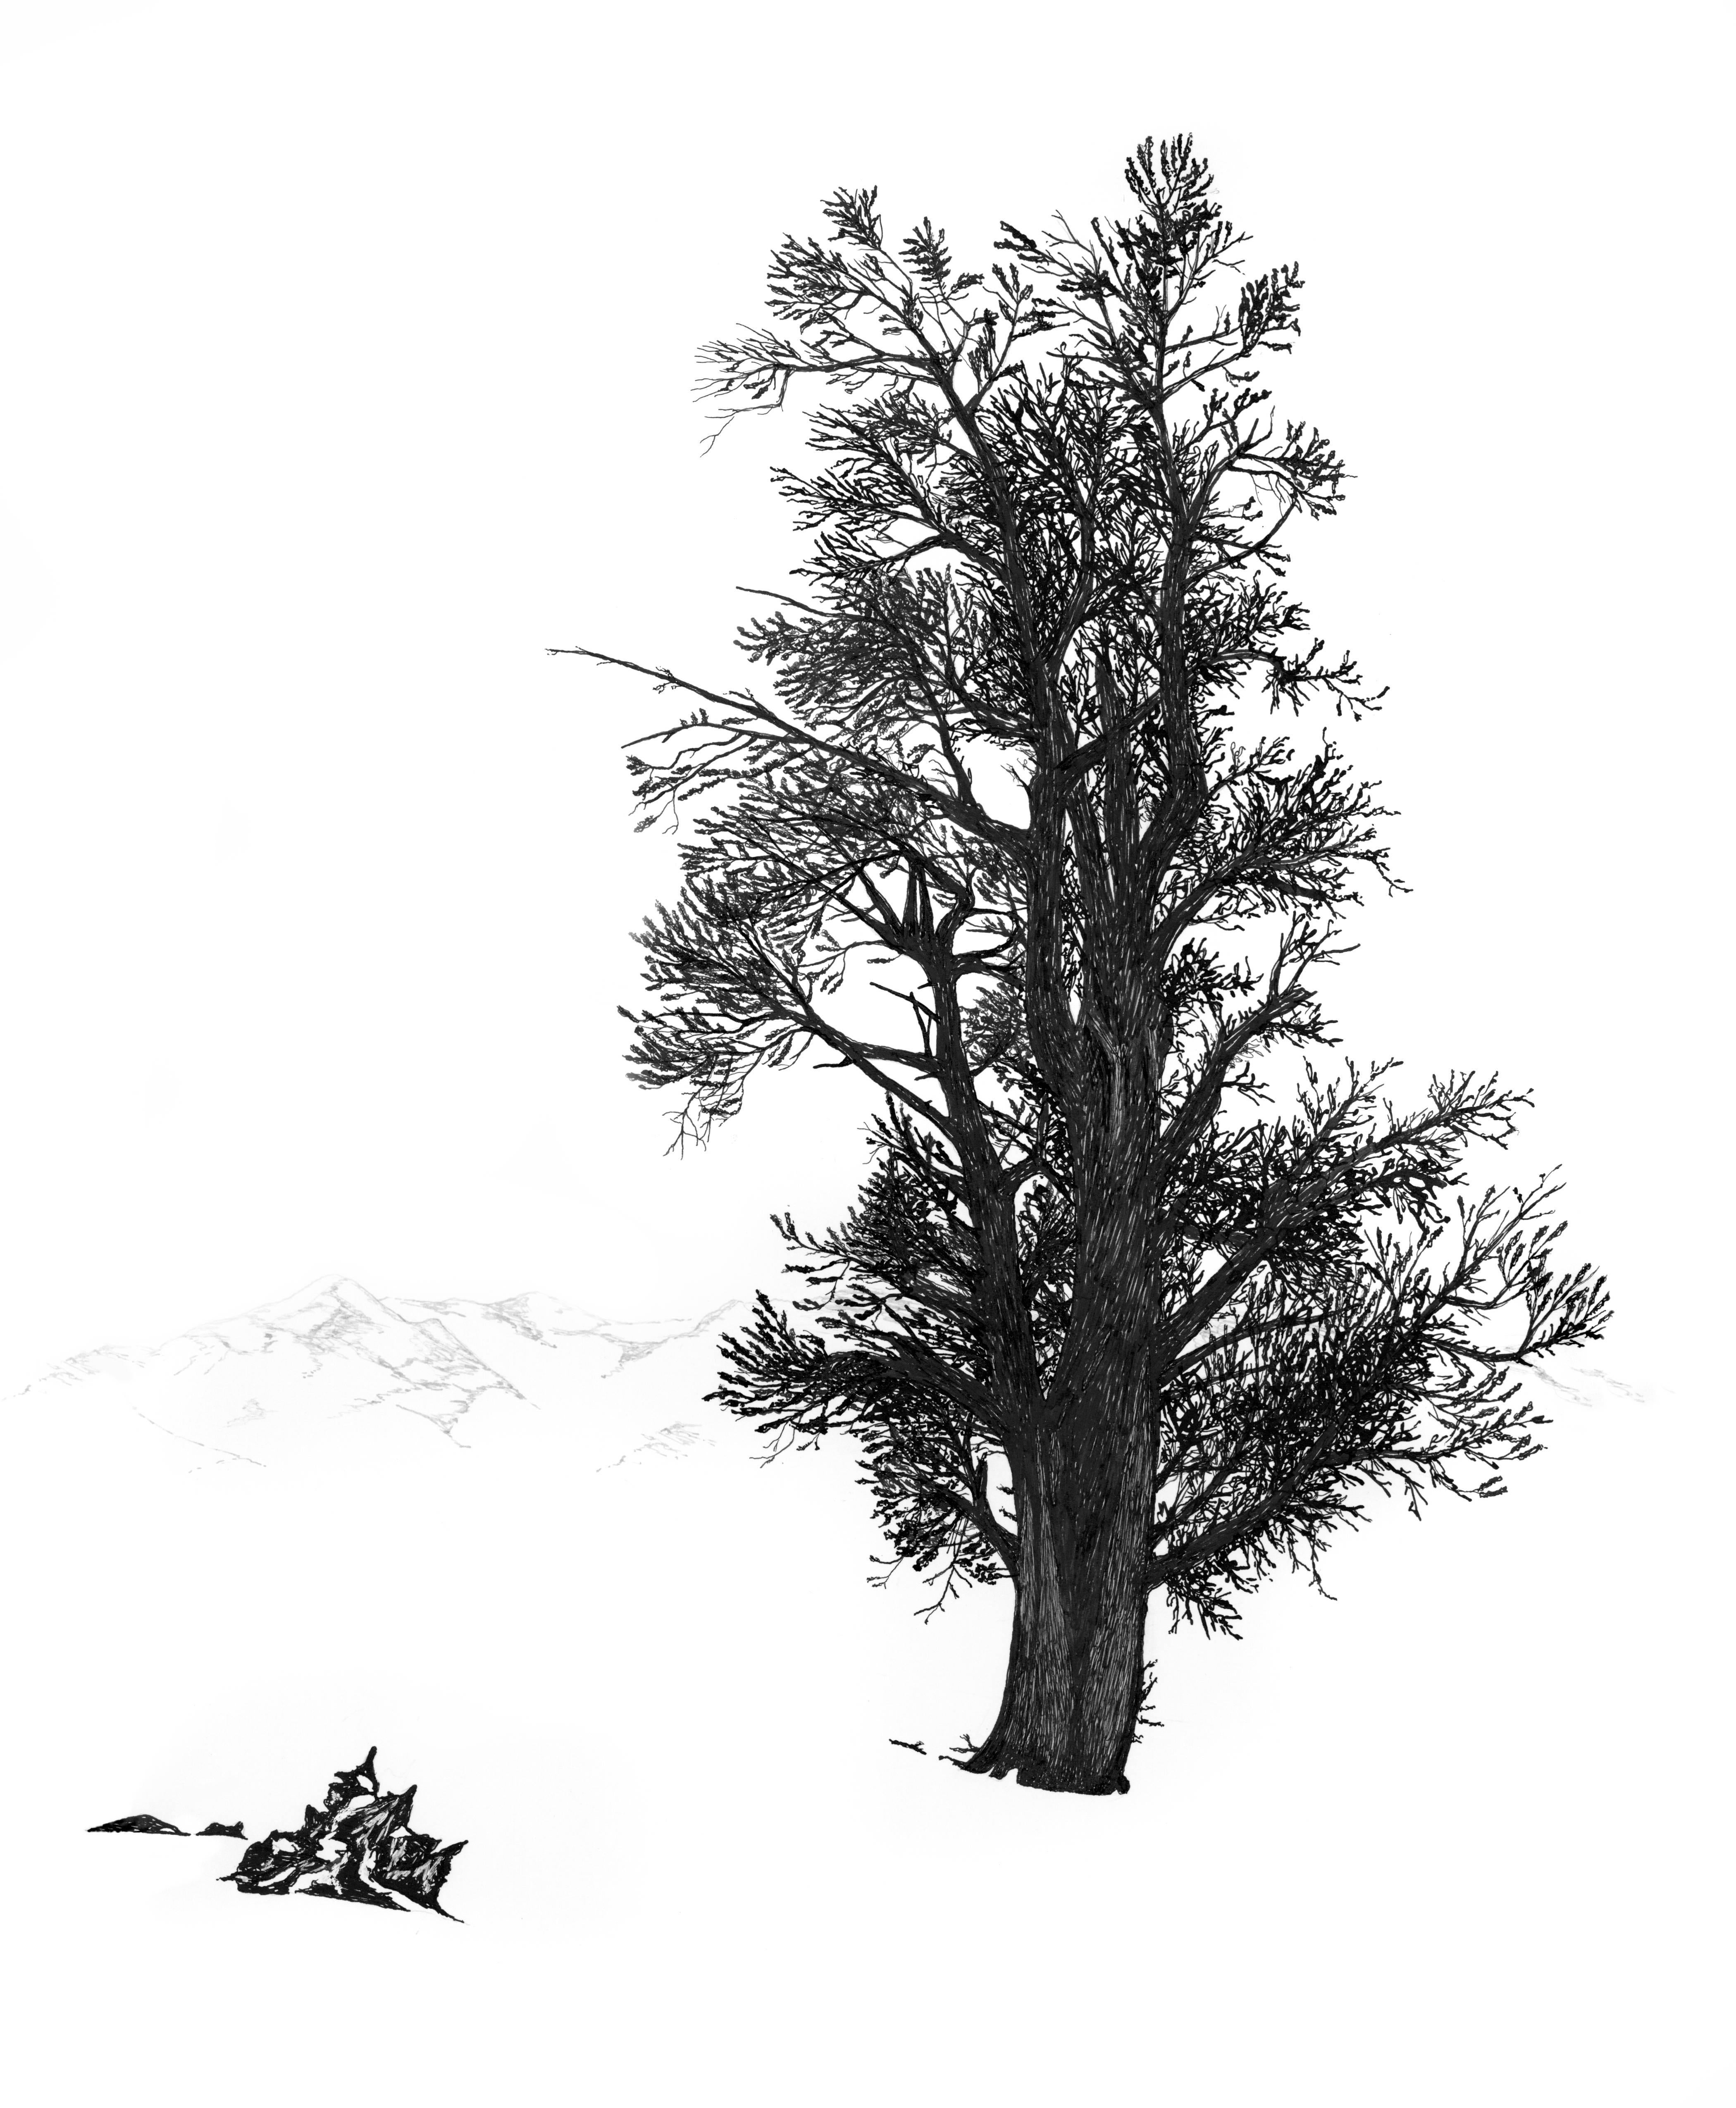 Ludo Leideritz Landscape Art - Bristlecone in Winter, White Mountains